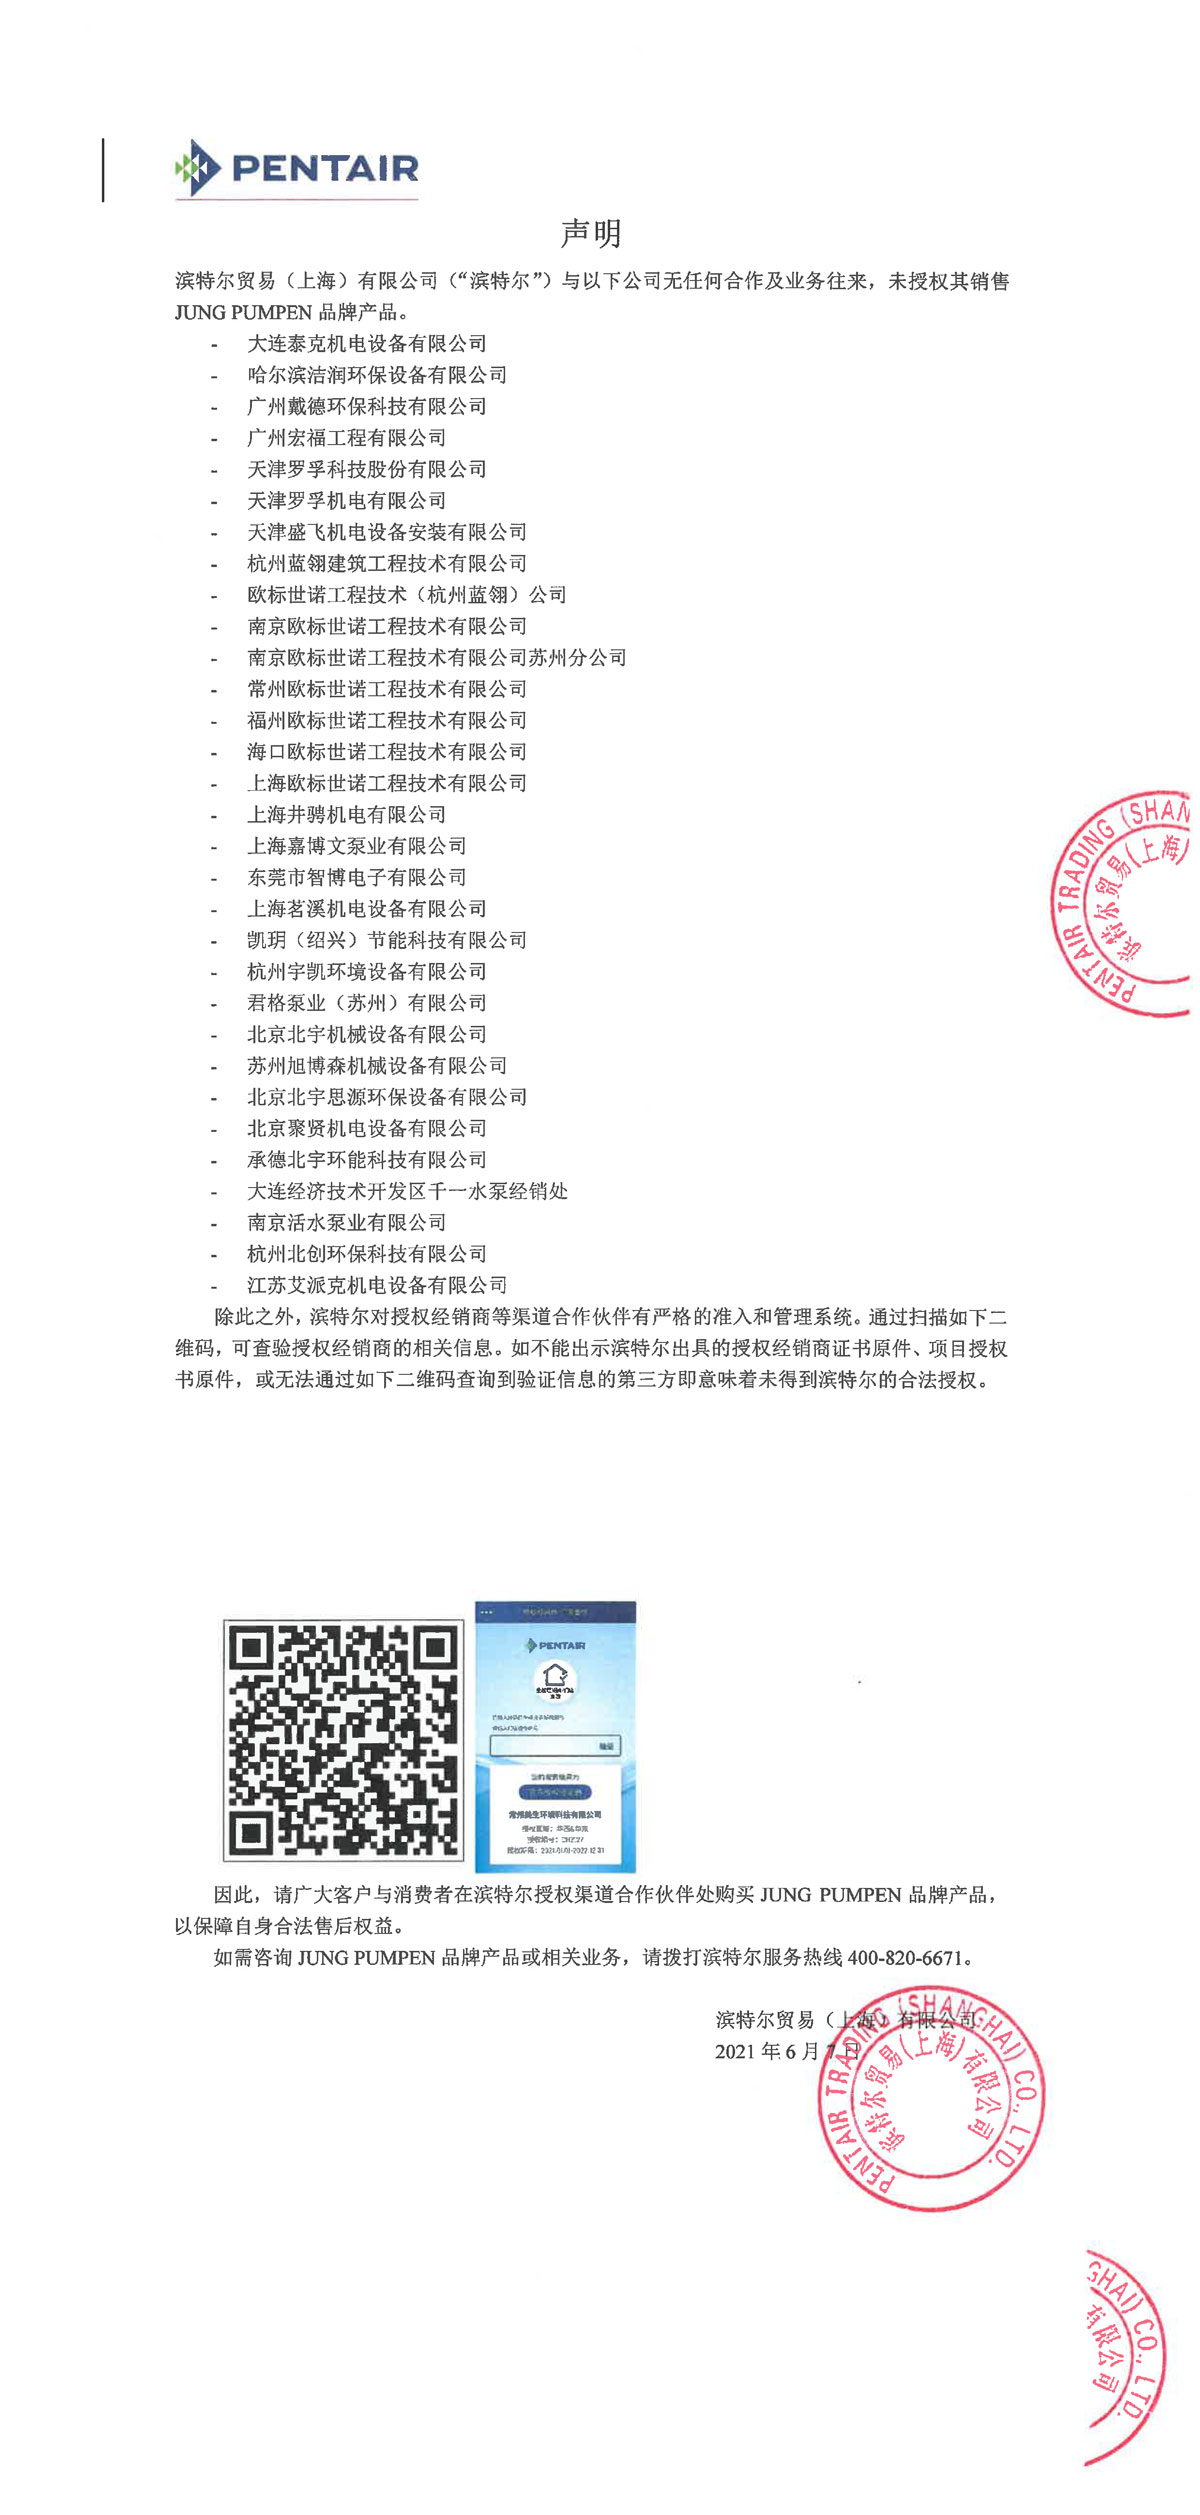 云顶集团·(中国)手机版app下载